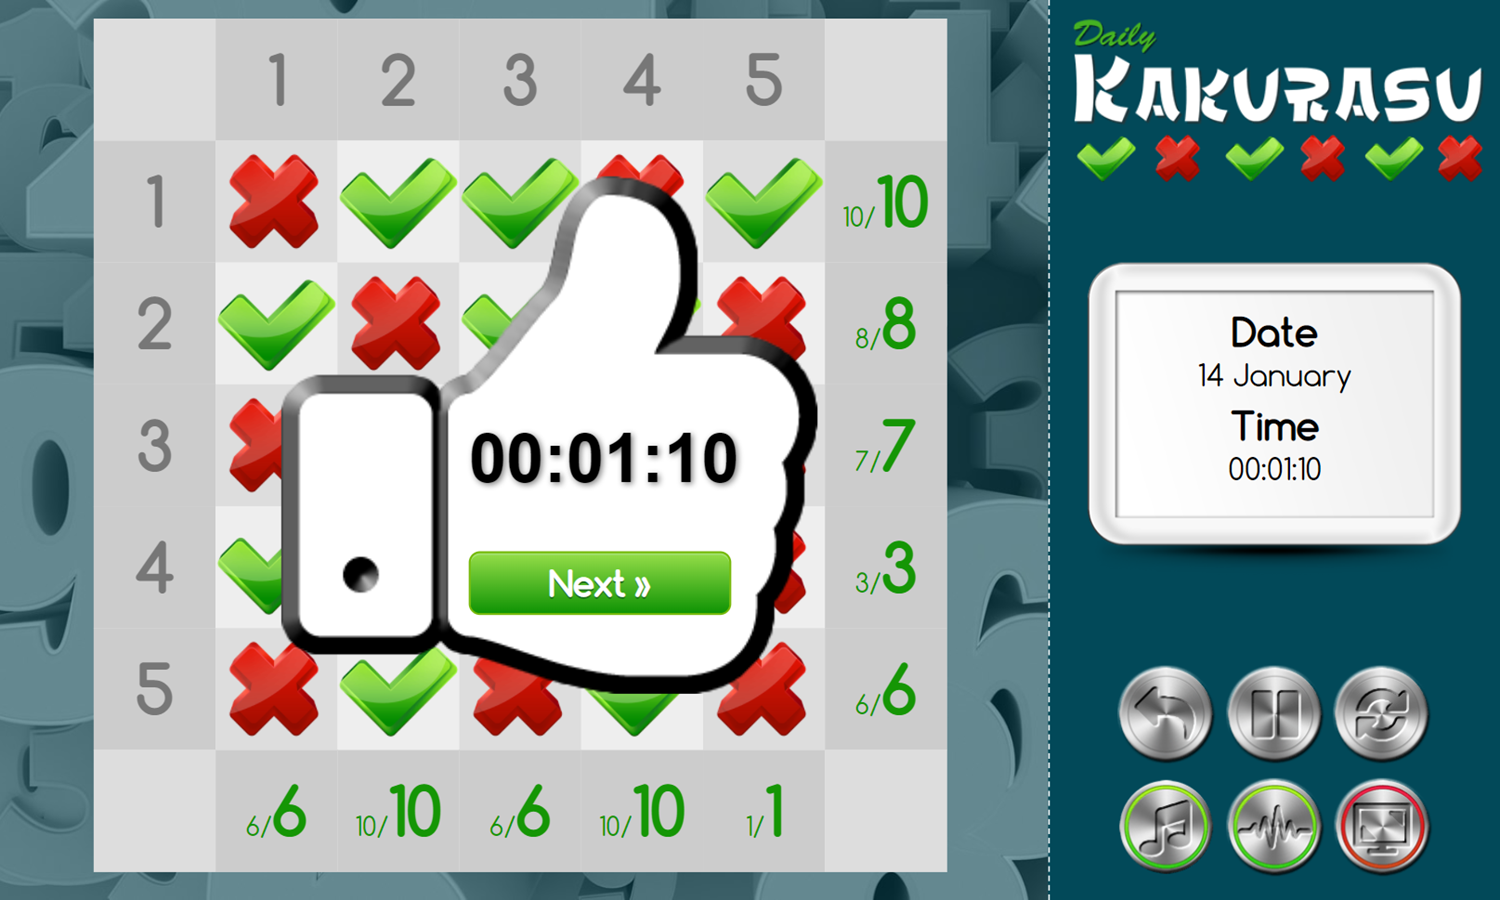 Daily Kakurasu Game Complete Screenshot.